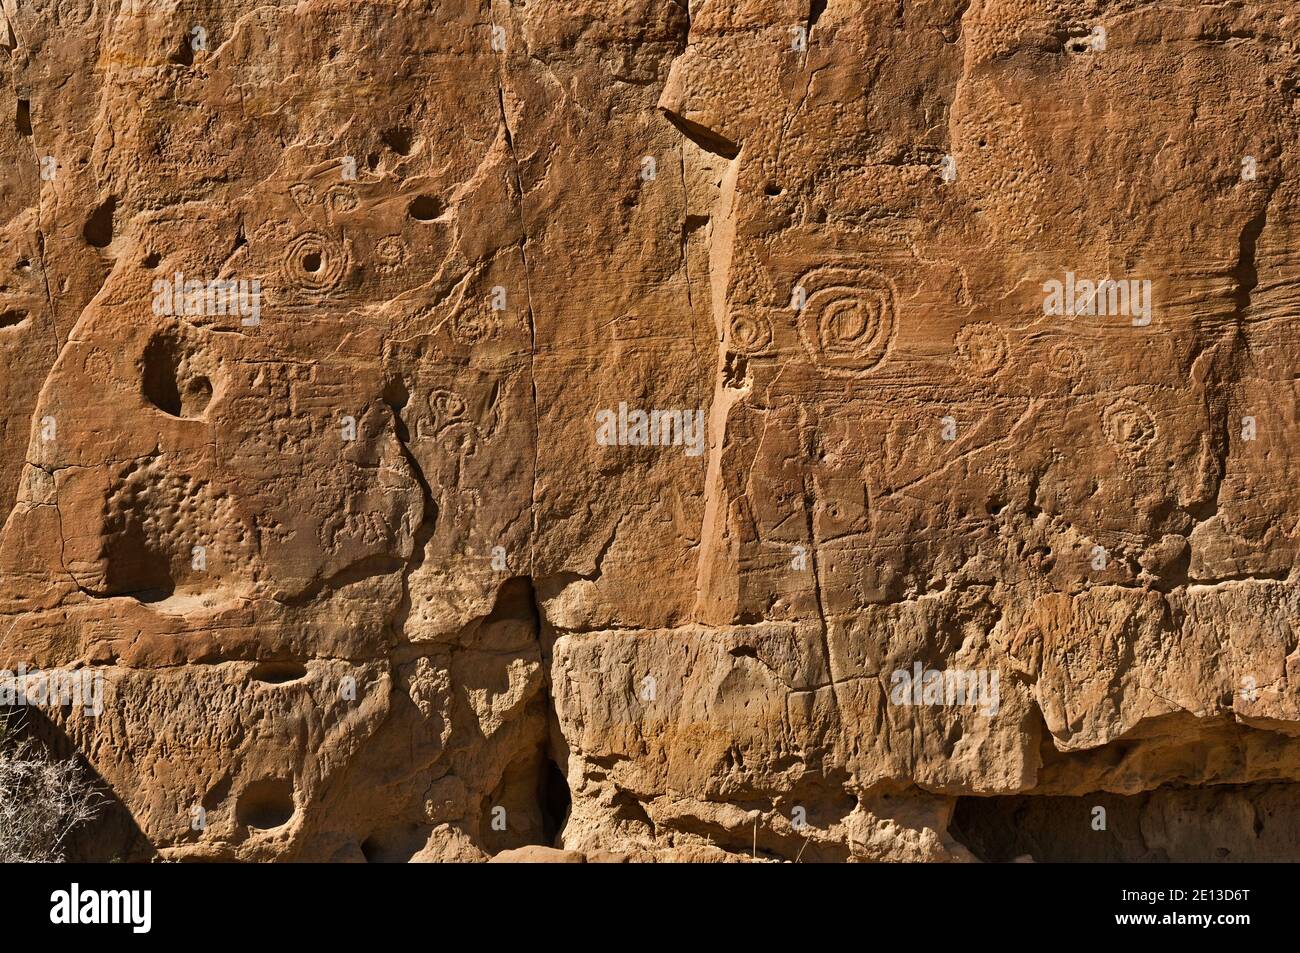 Petroglifos cerca de Pueblo bonito, ruinas indígenas Anasazi, Parque Histórico Nacional de Cultura Chaco, Nuevo México, EE.UU Foto de stock